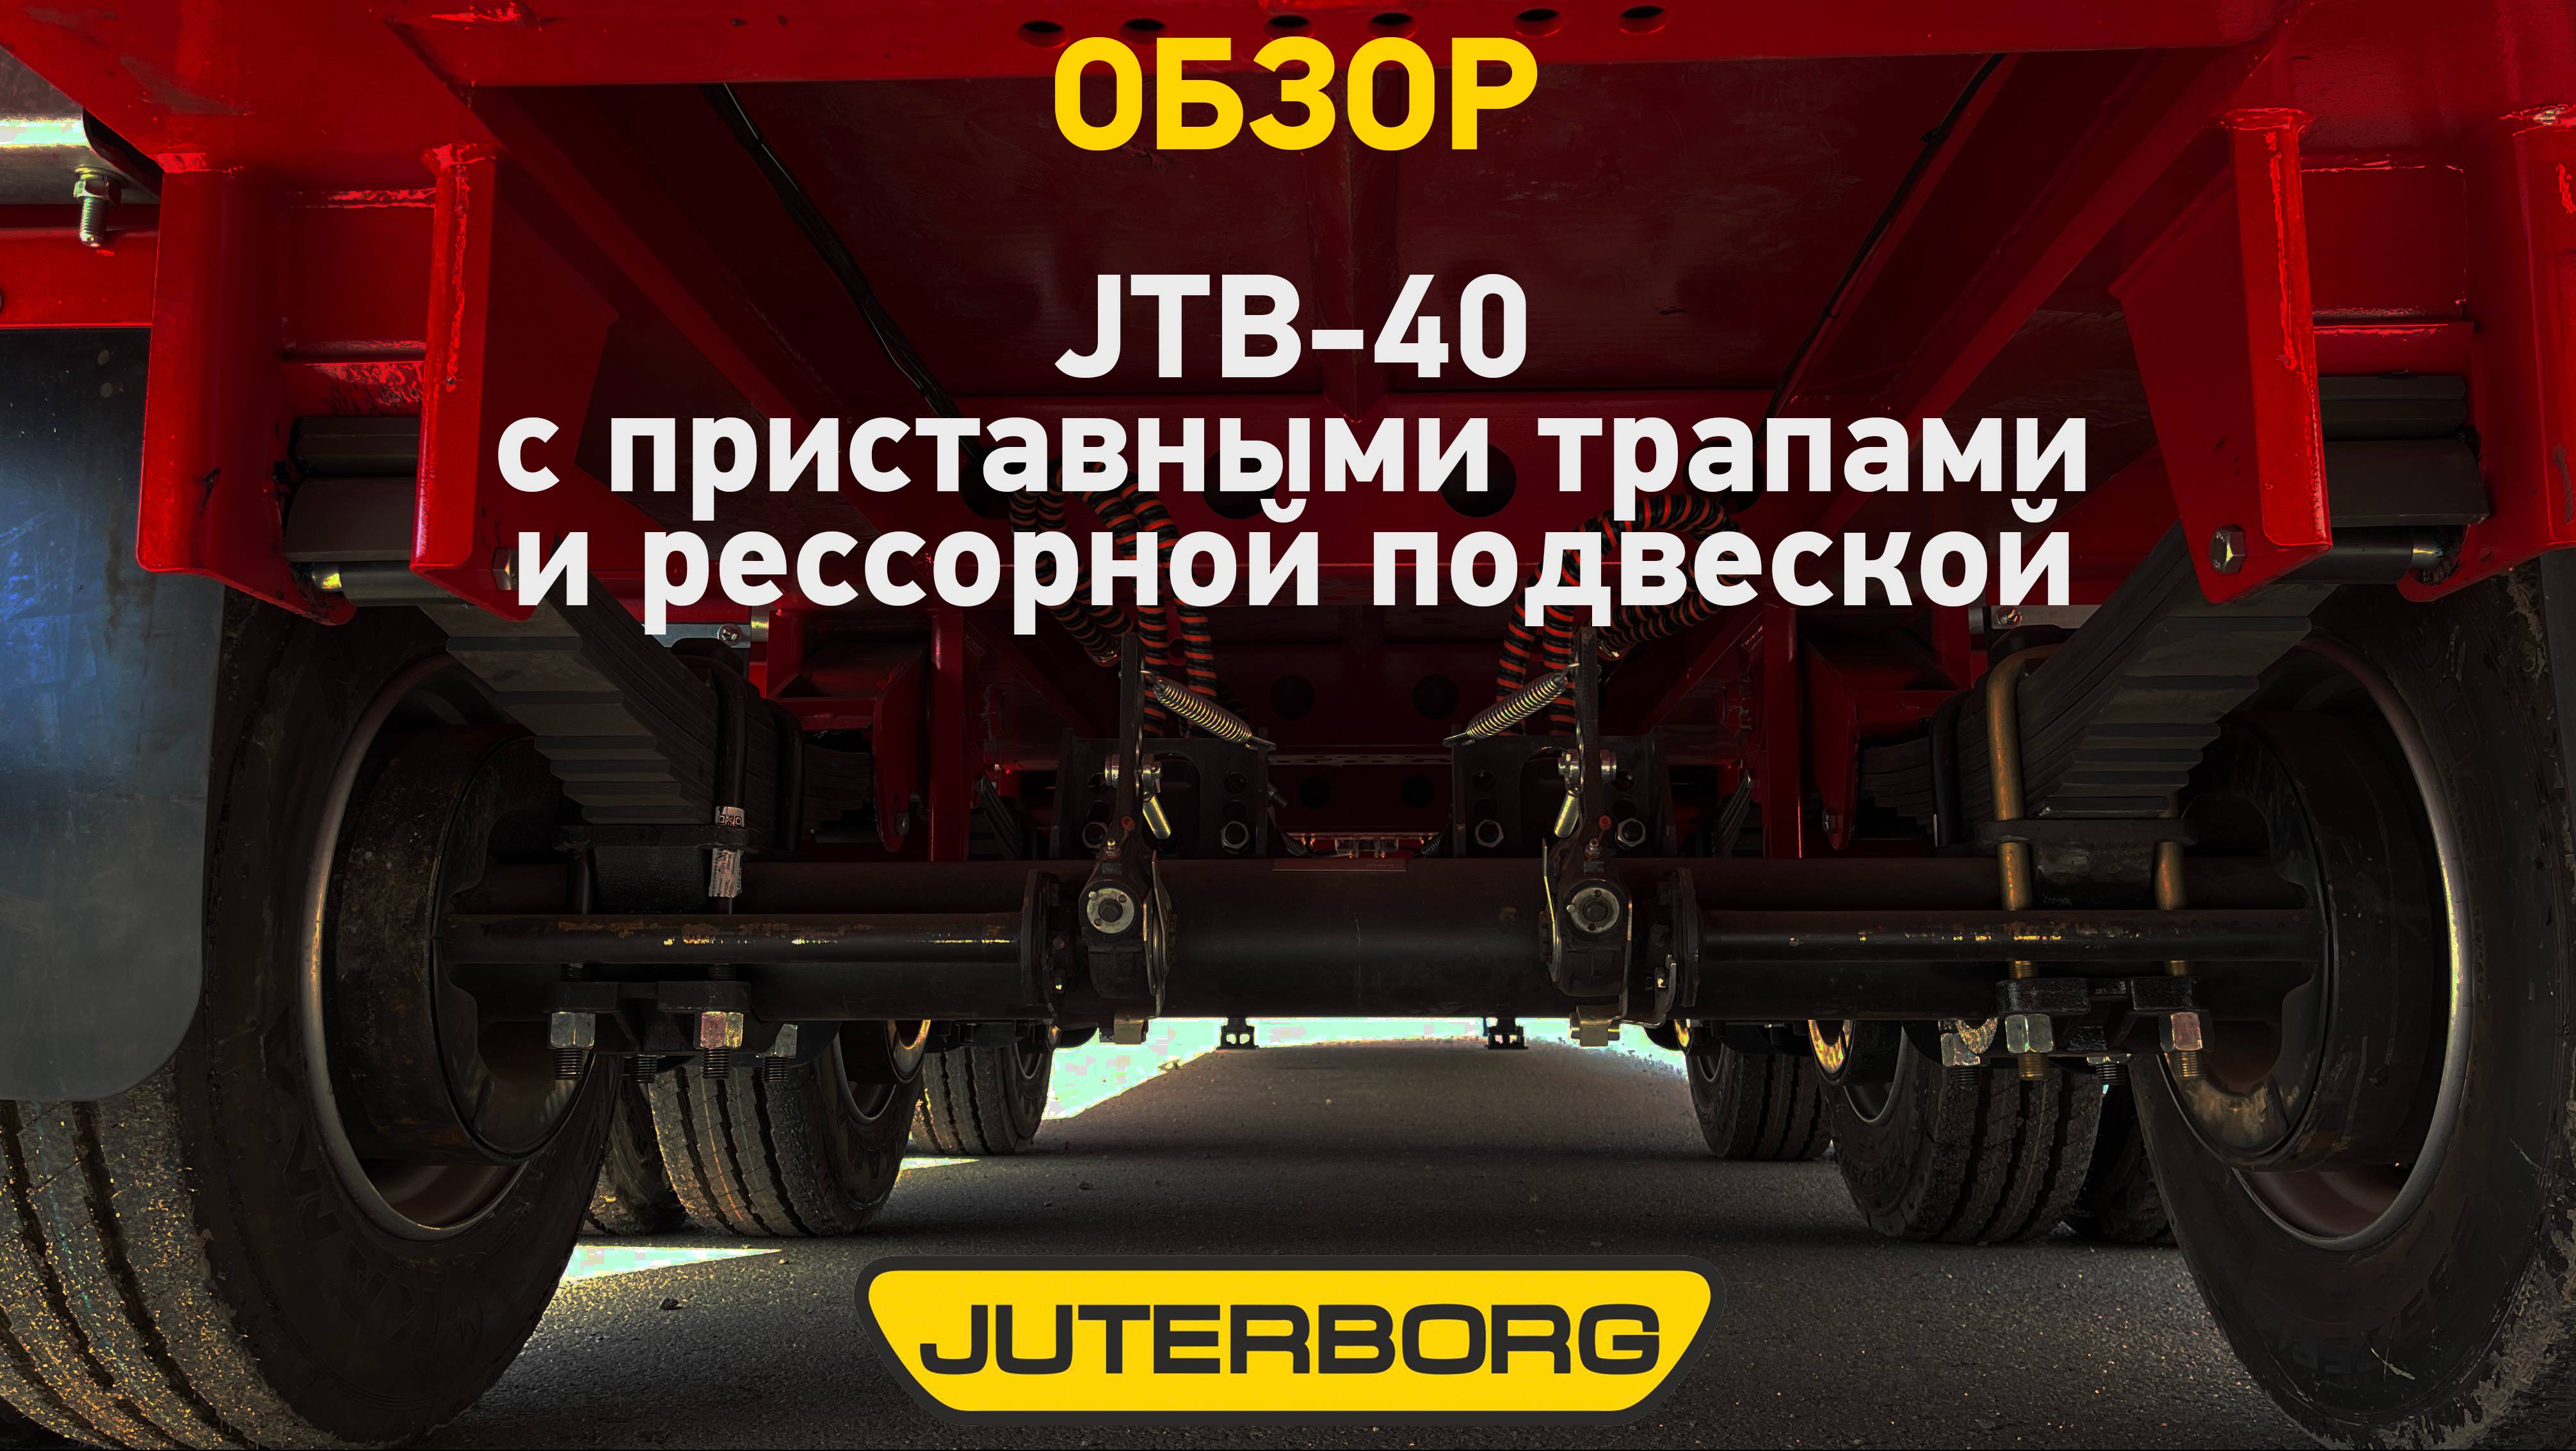 Два одинаковых трала JUTERBORG отправились в Татарстан